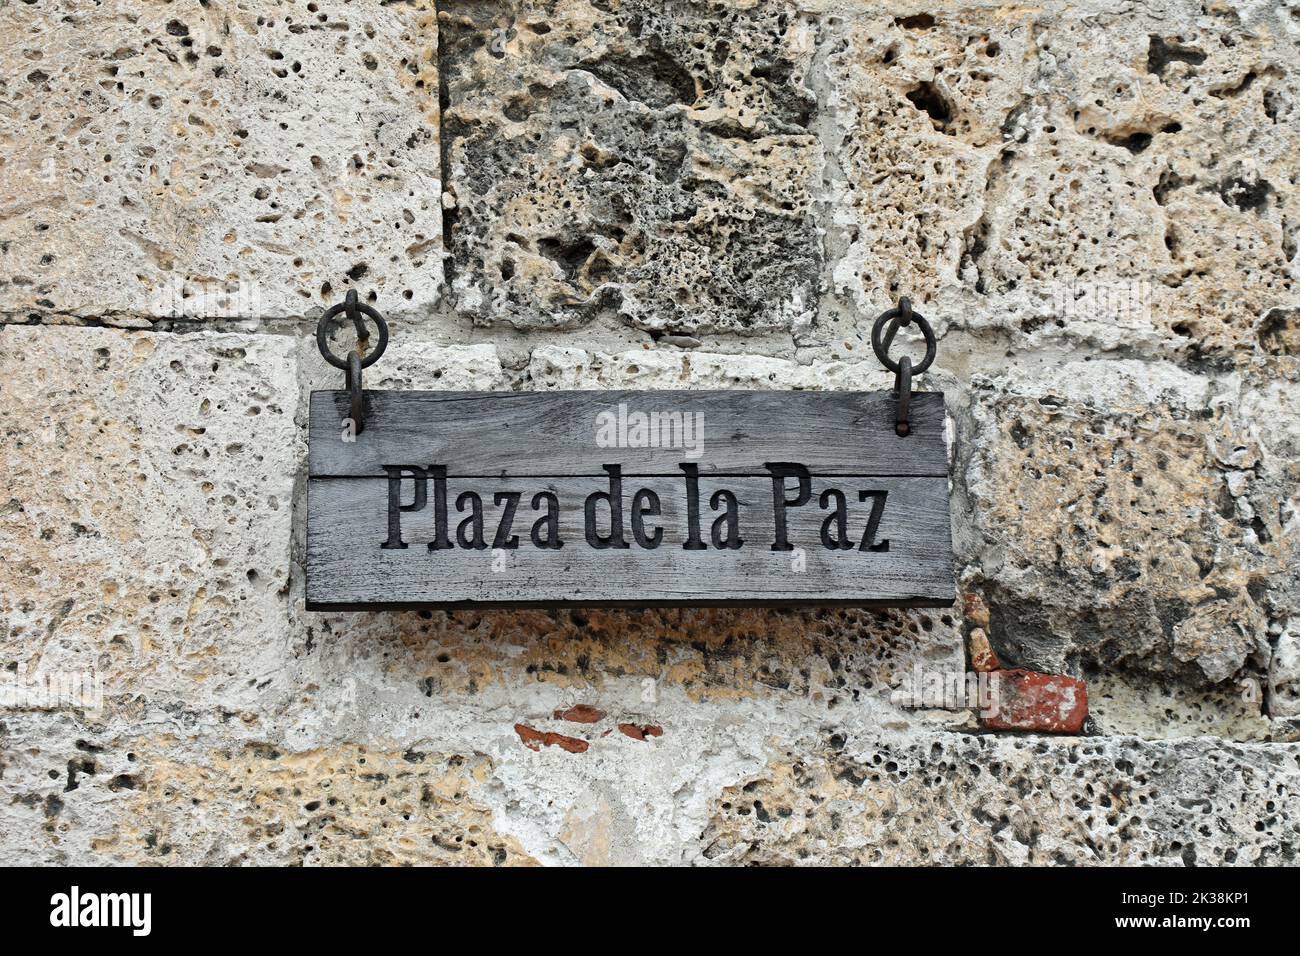 Plaza de la Paz in Cartagena Stock Photo